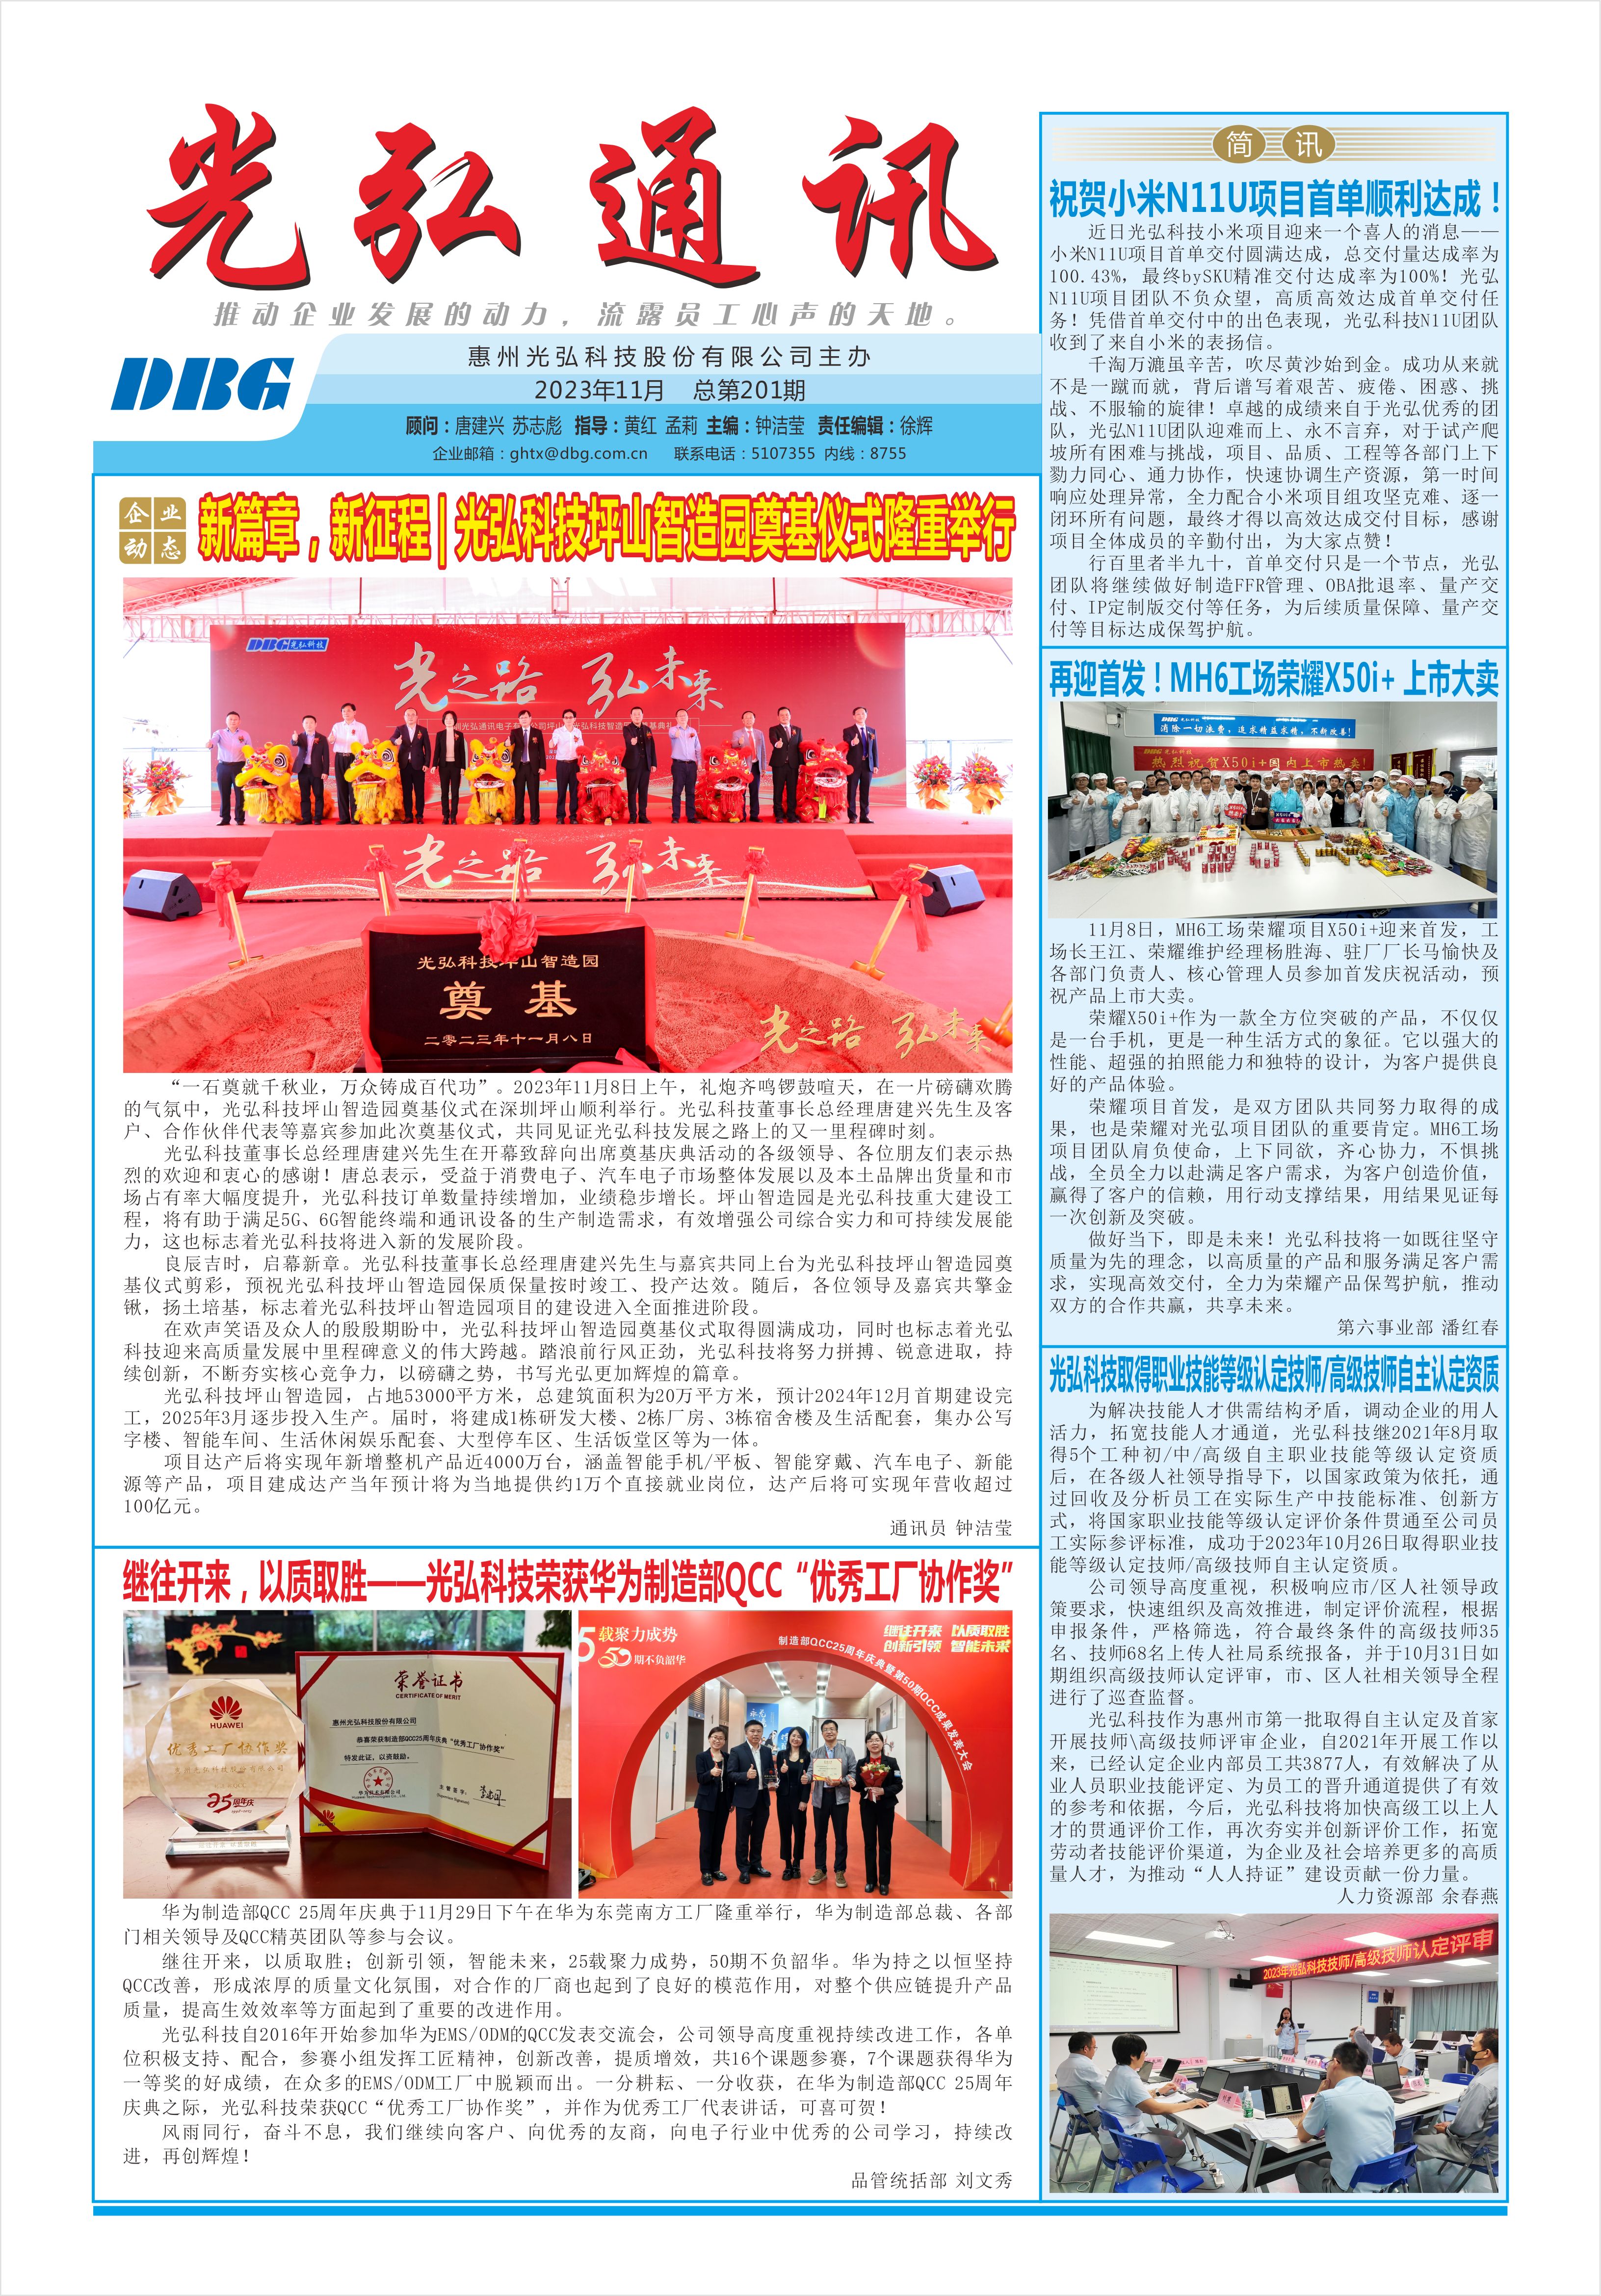 光弘通讯——201期 1 - DBG press No.201